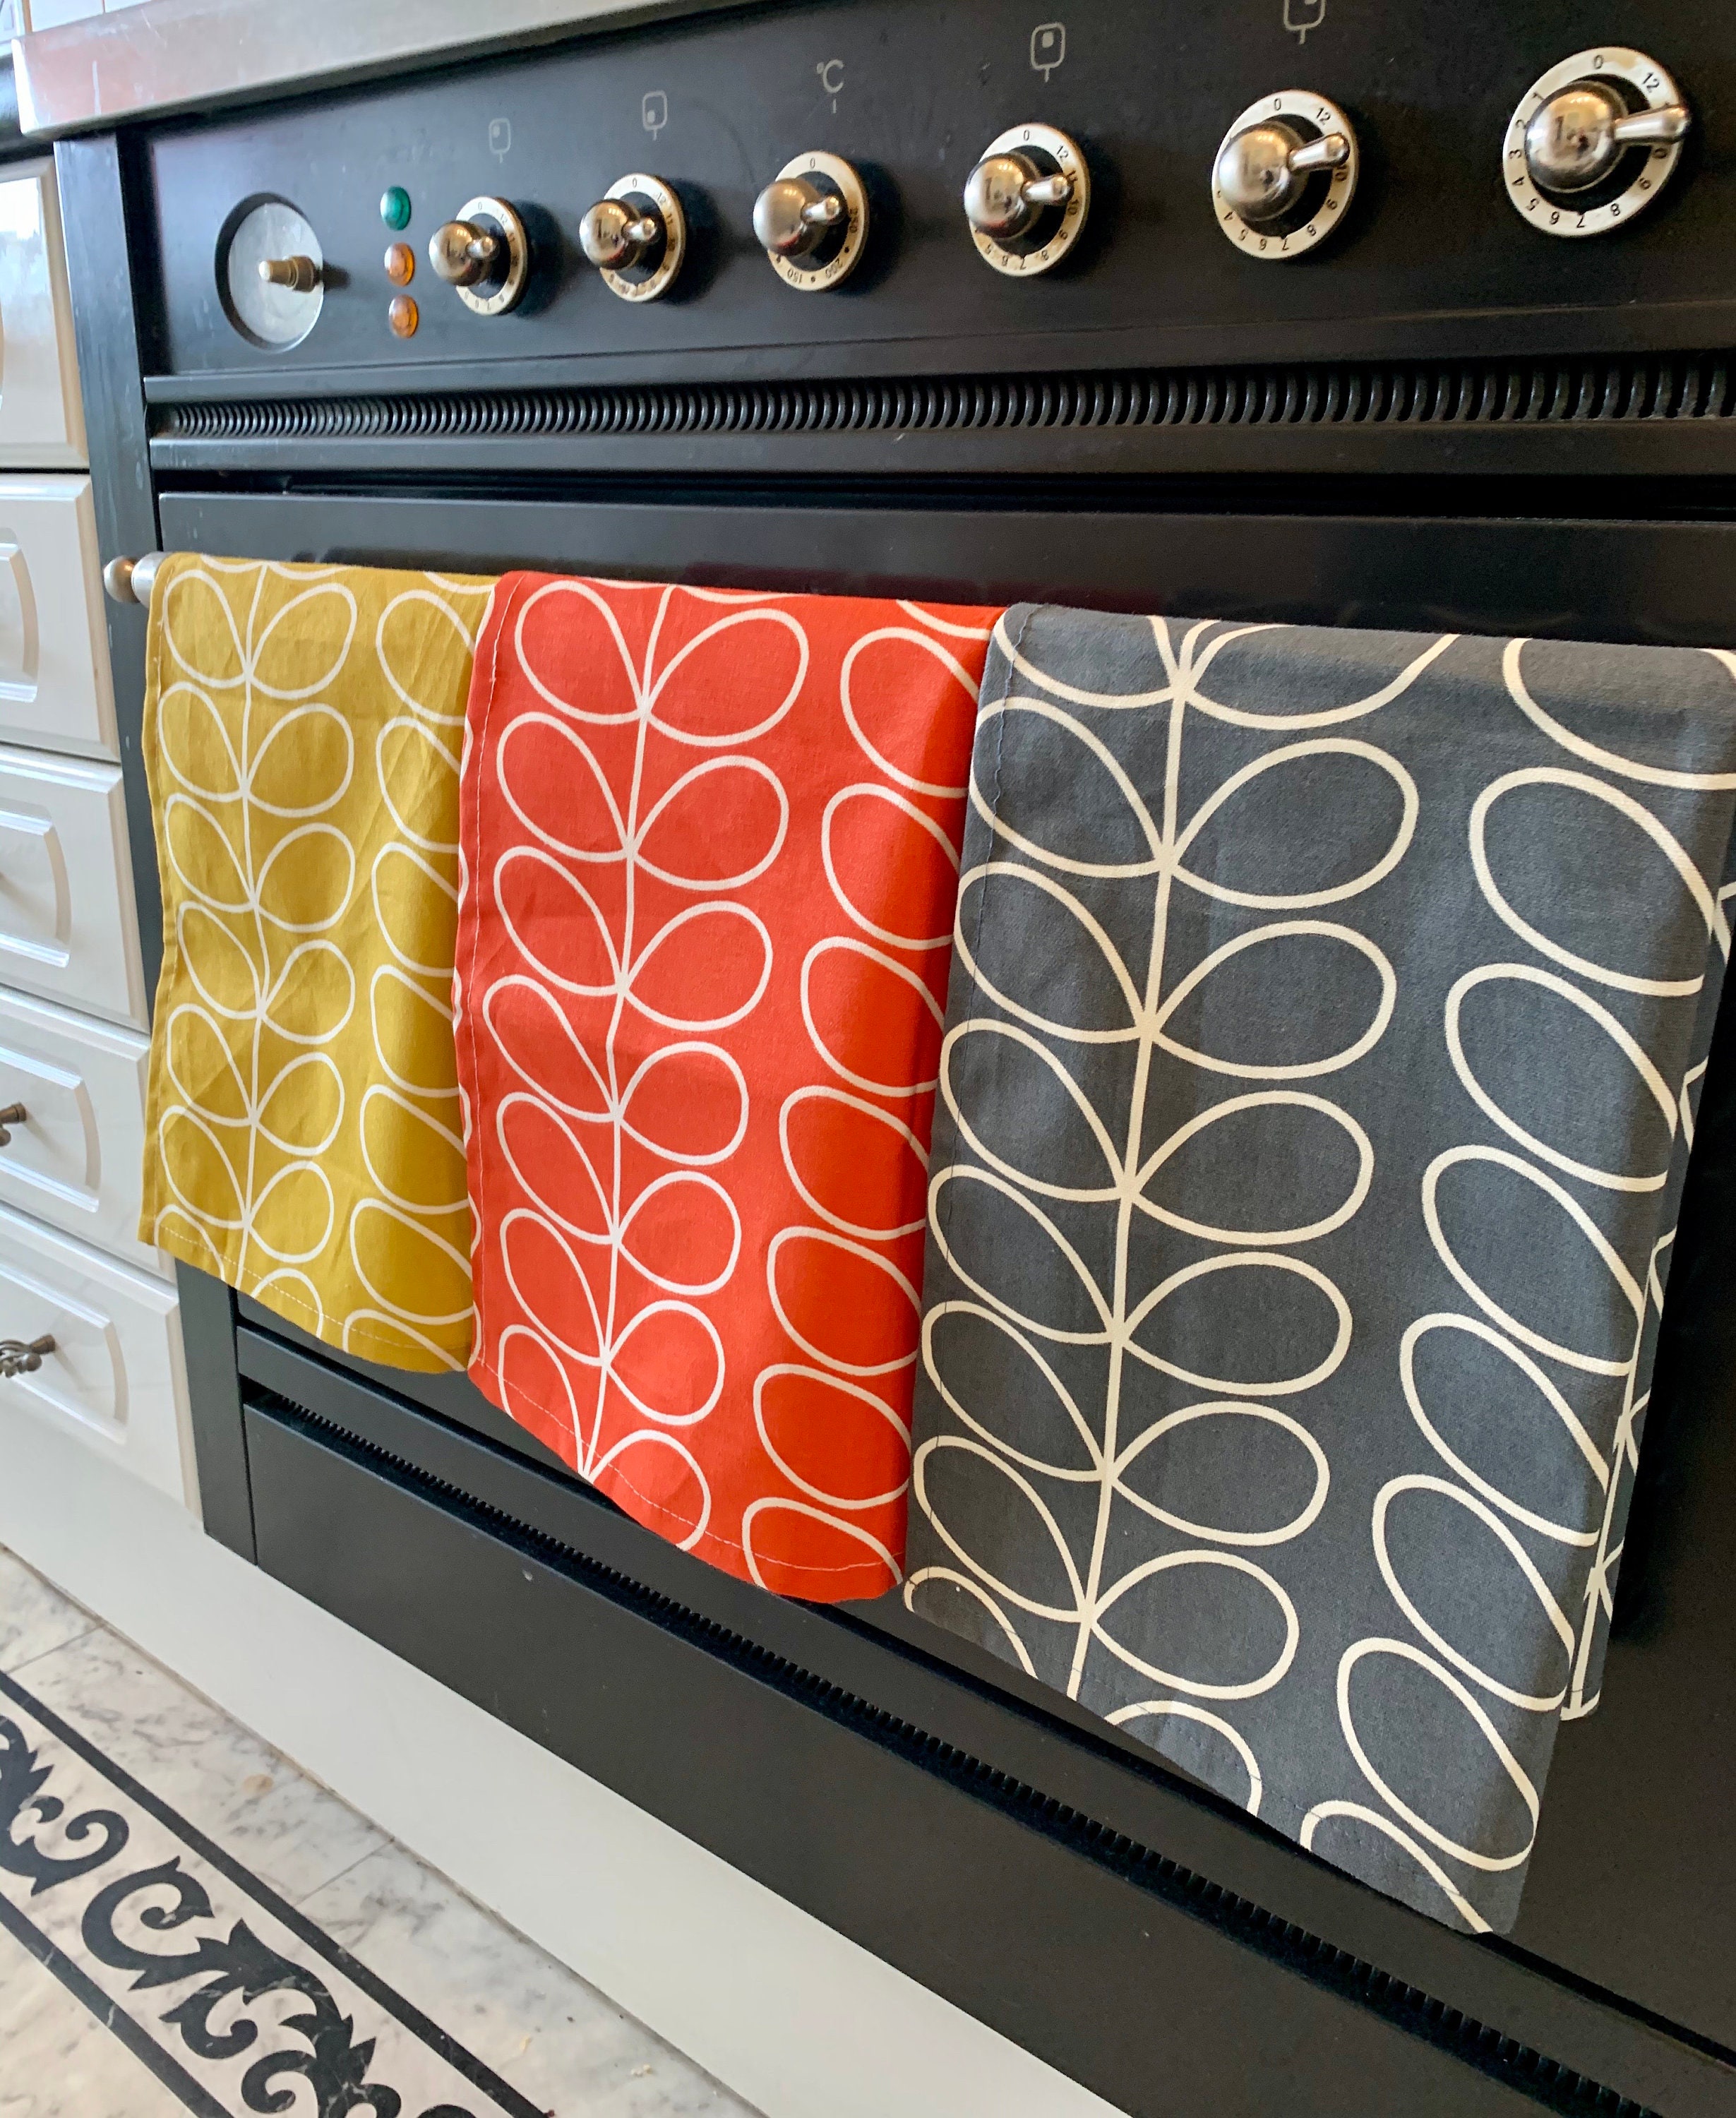 NoteworthyDesigns Modern Kitchen Towels, Retro Kitchen Decor, Vintage  Kitchen Accessories, for Mid Century Modern 1950s Style, 18” x 23”, 3 Pack